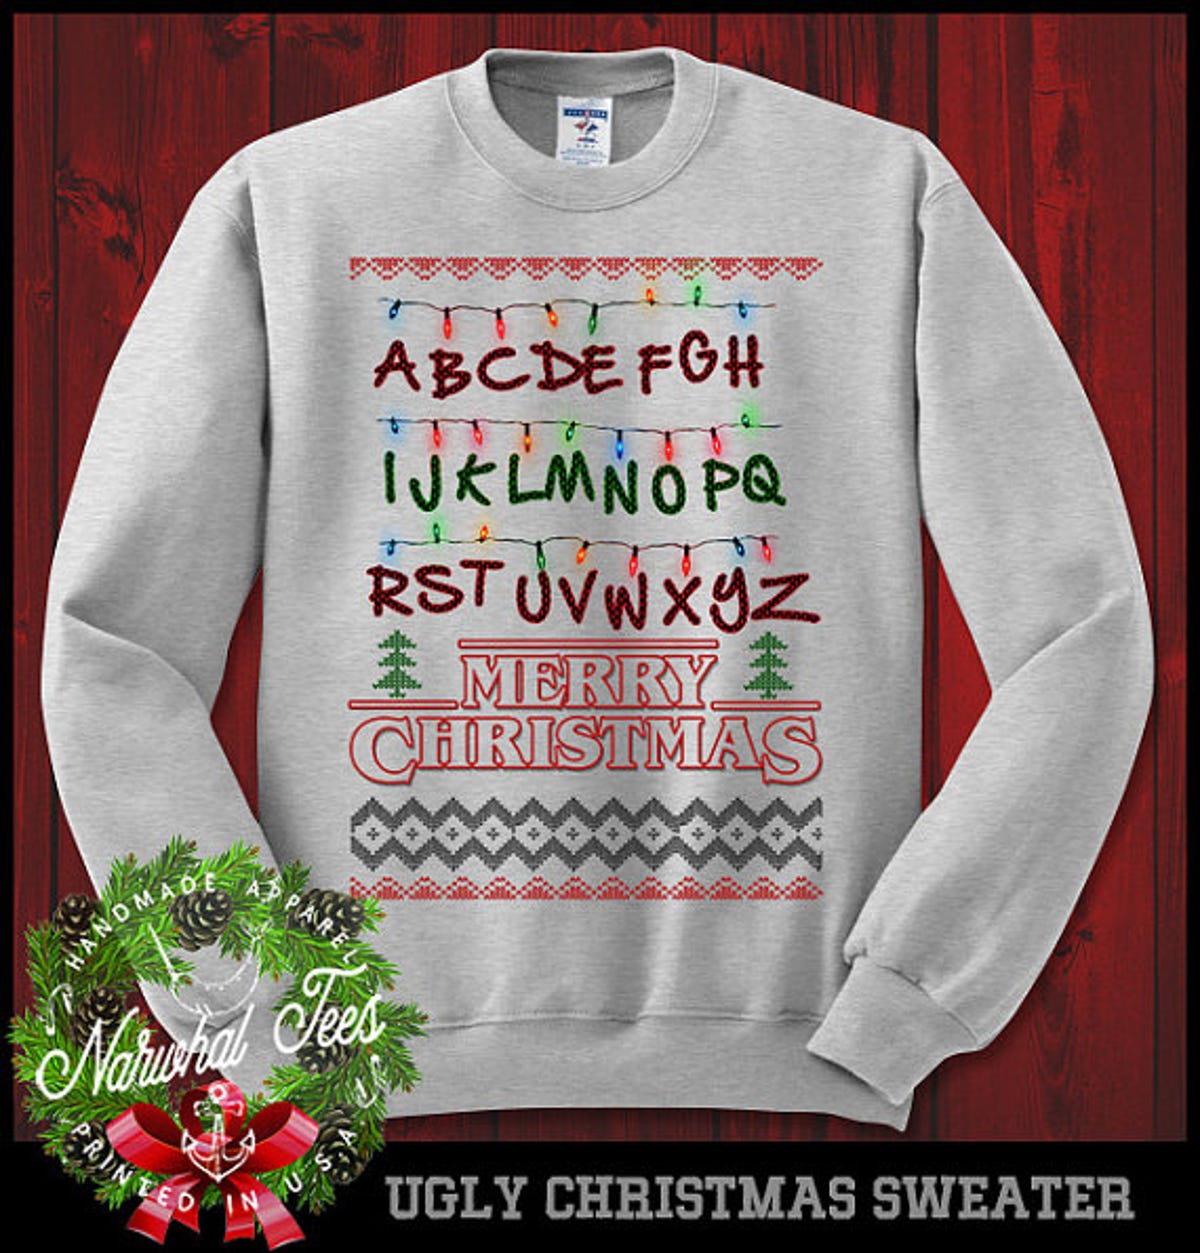 christmas-sweatshirt.jpg